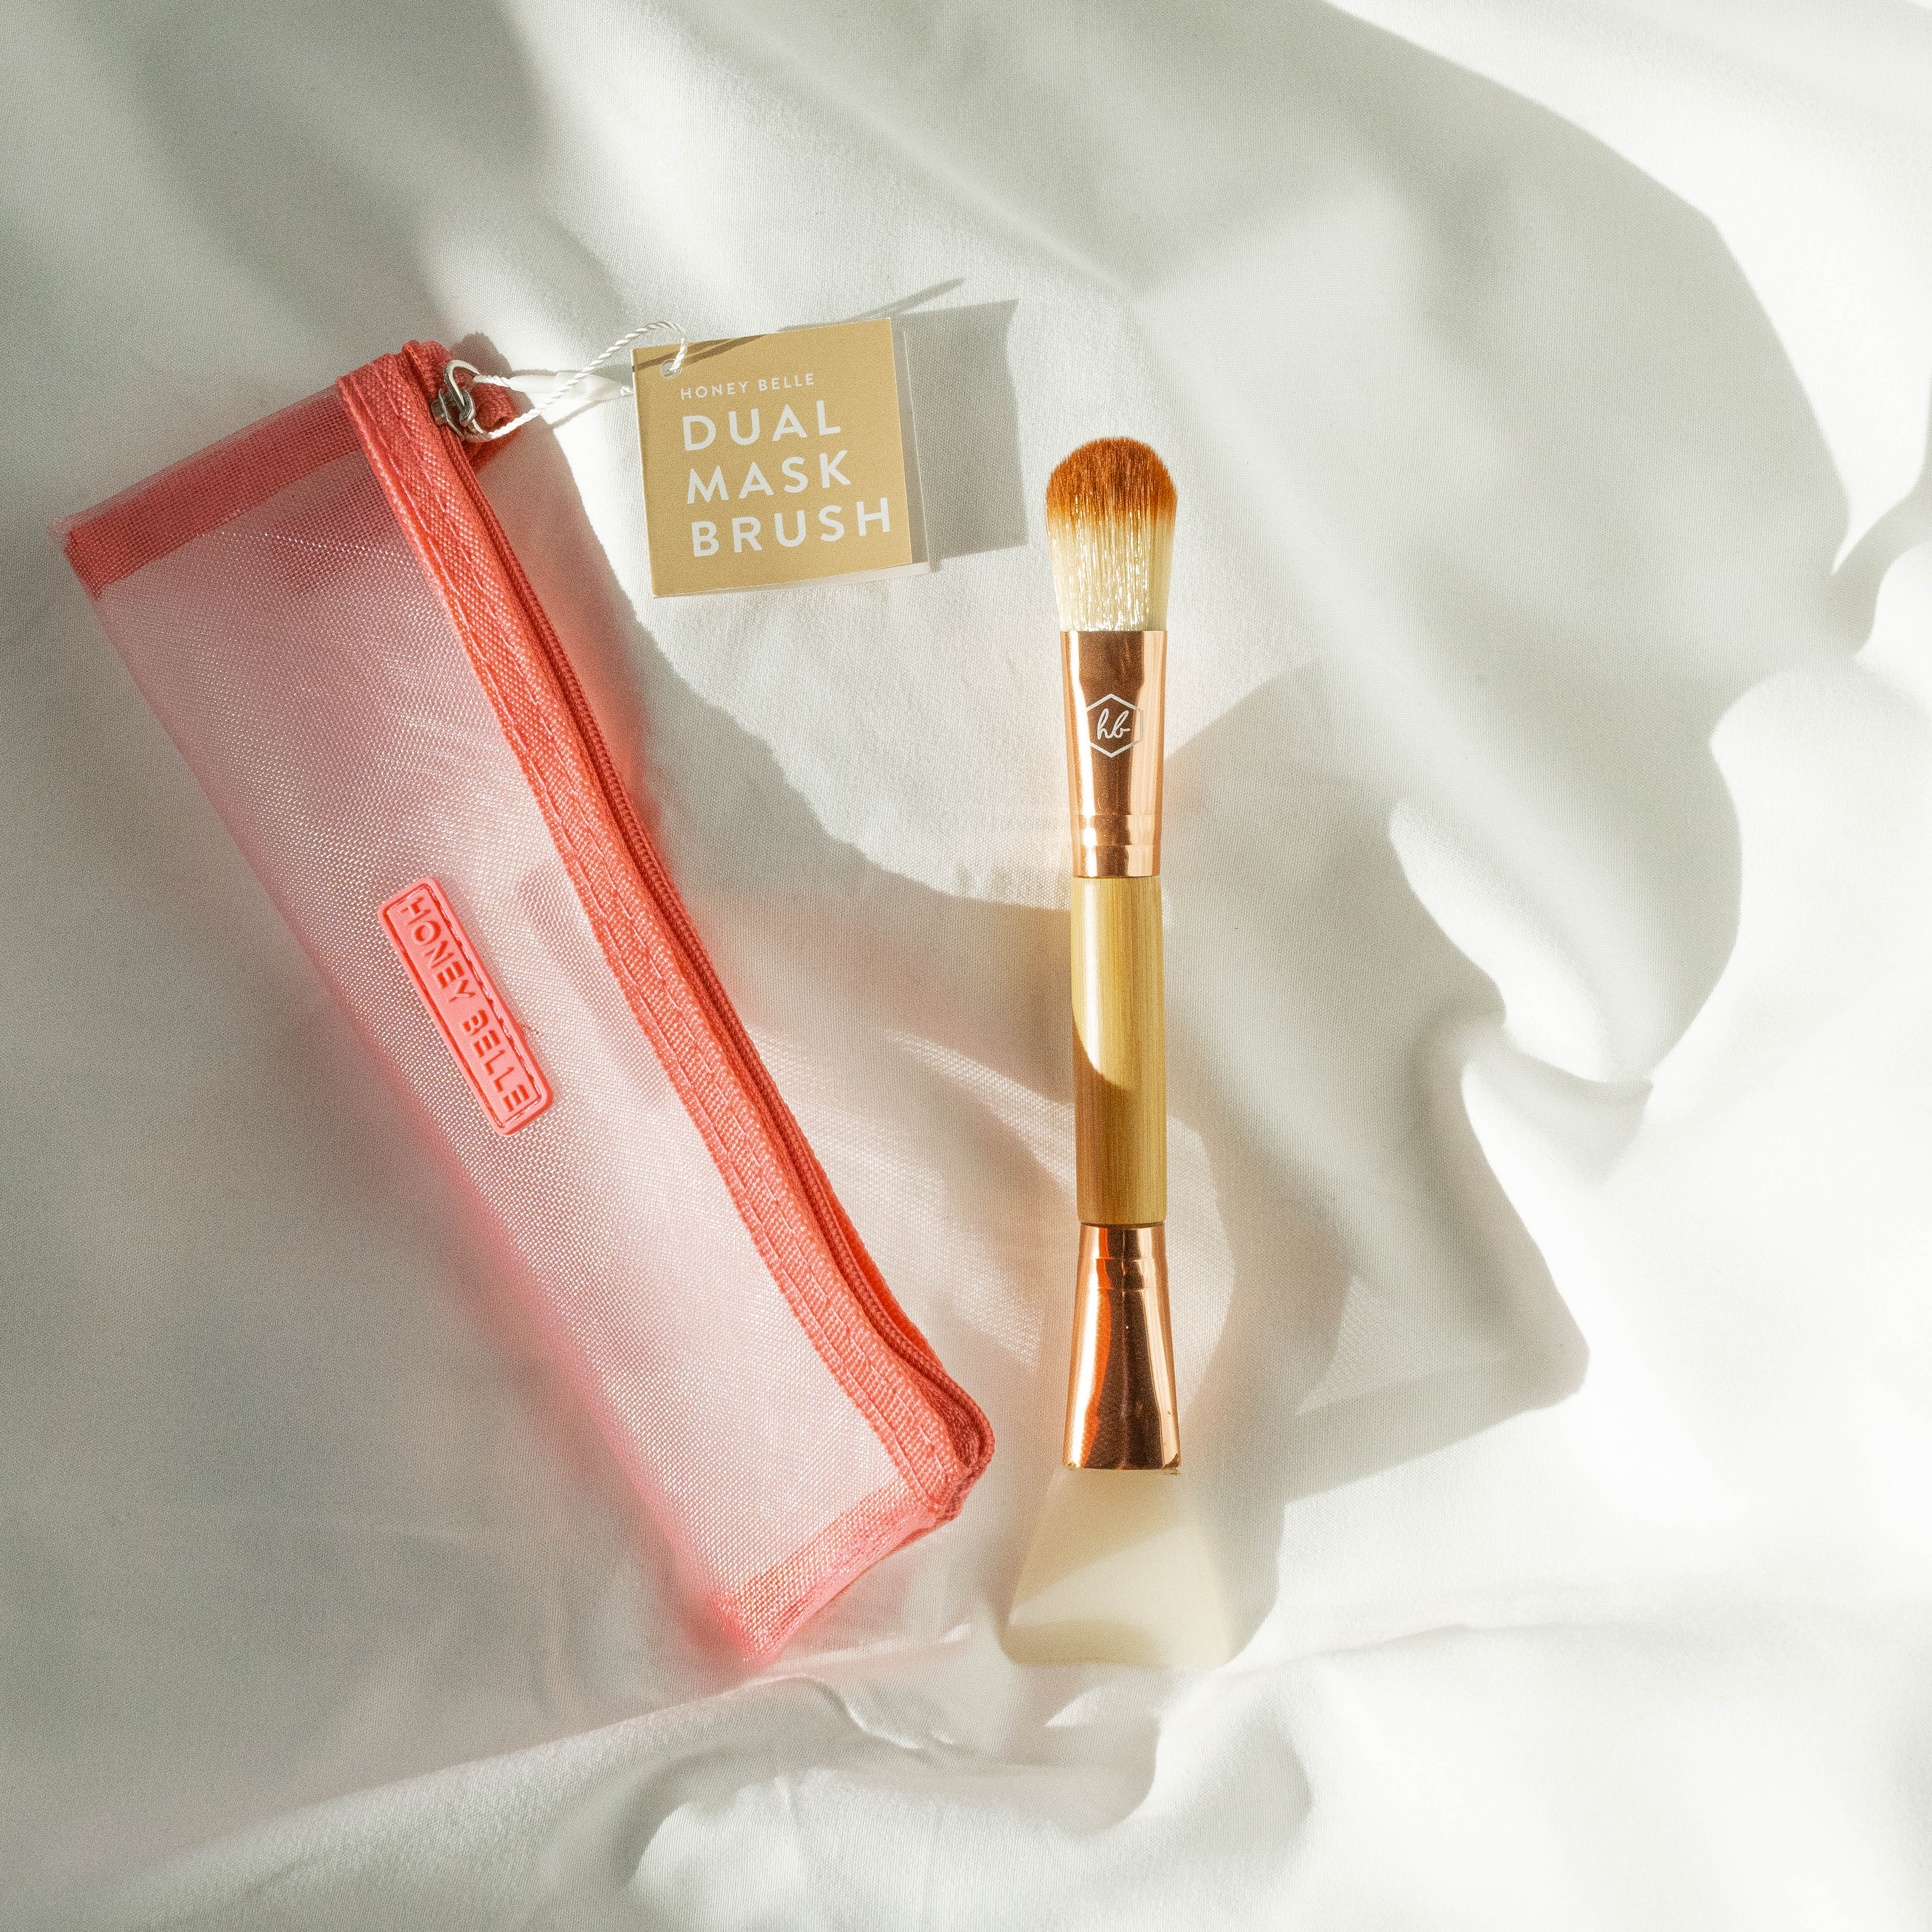 Dual Mask Brush – Belle Honey